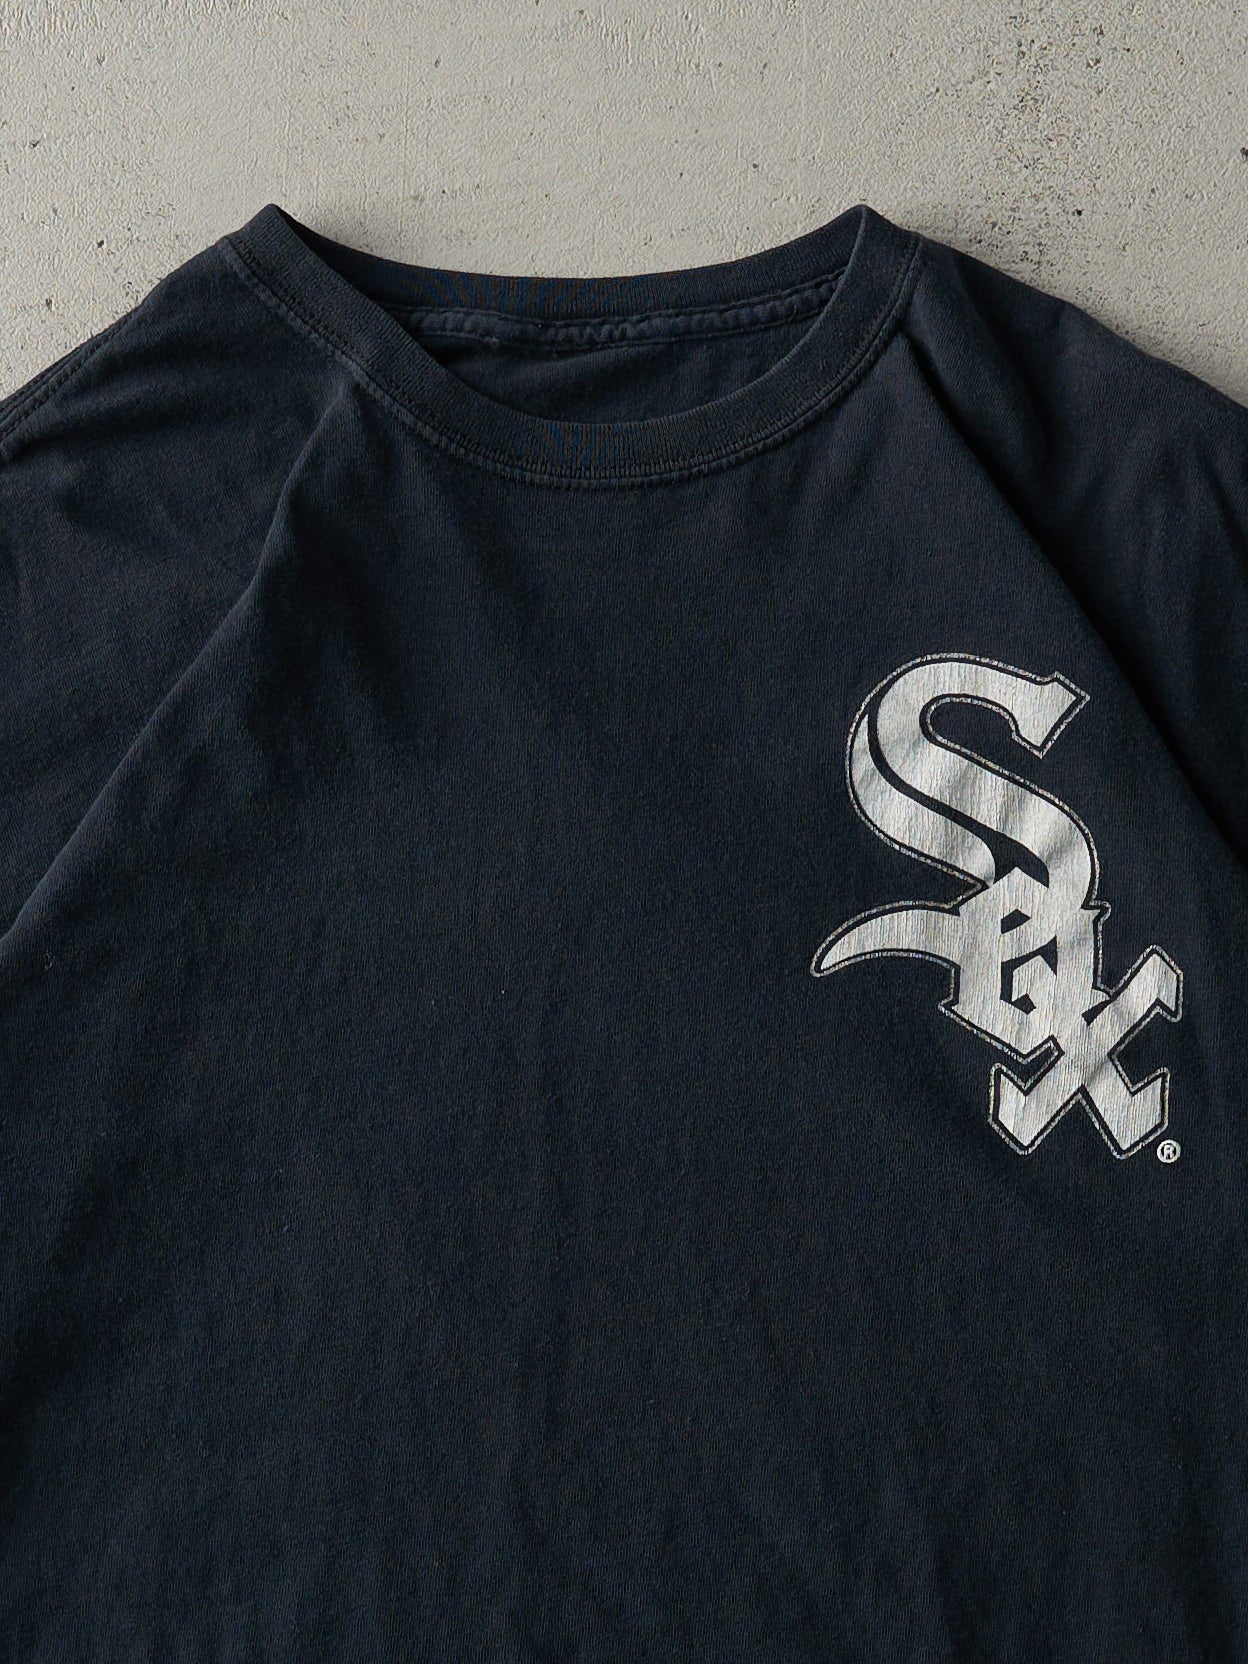 Vintage 90s Black Chicago White Sox MLB Tee (L)